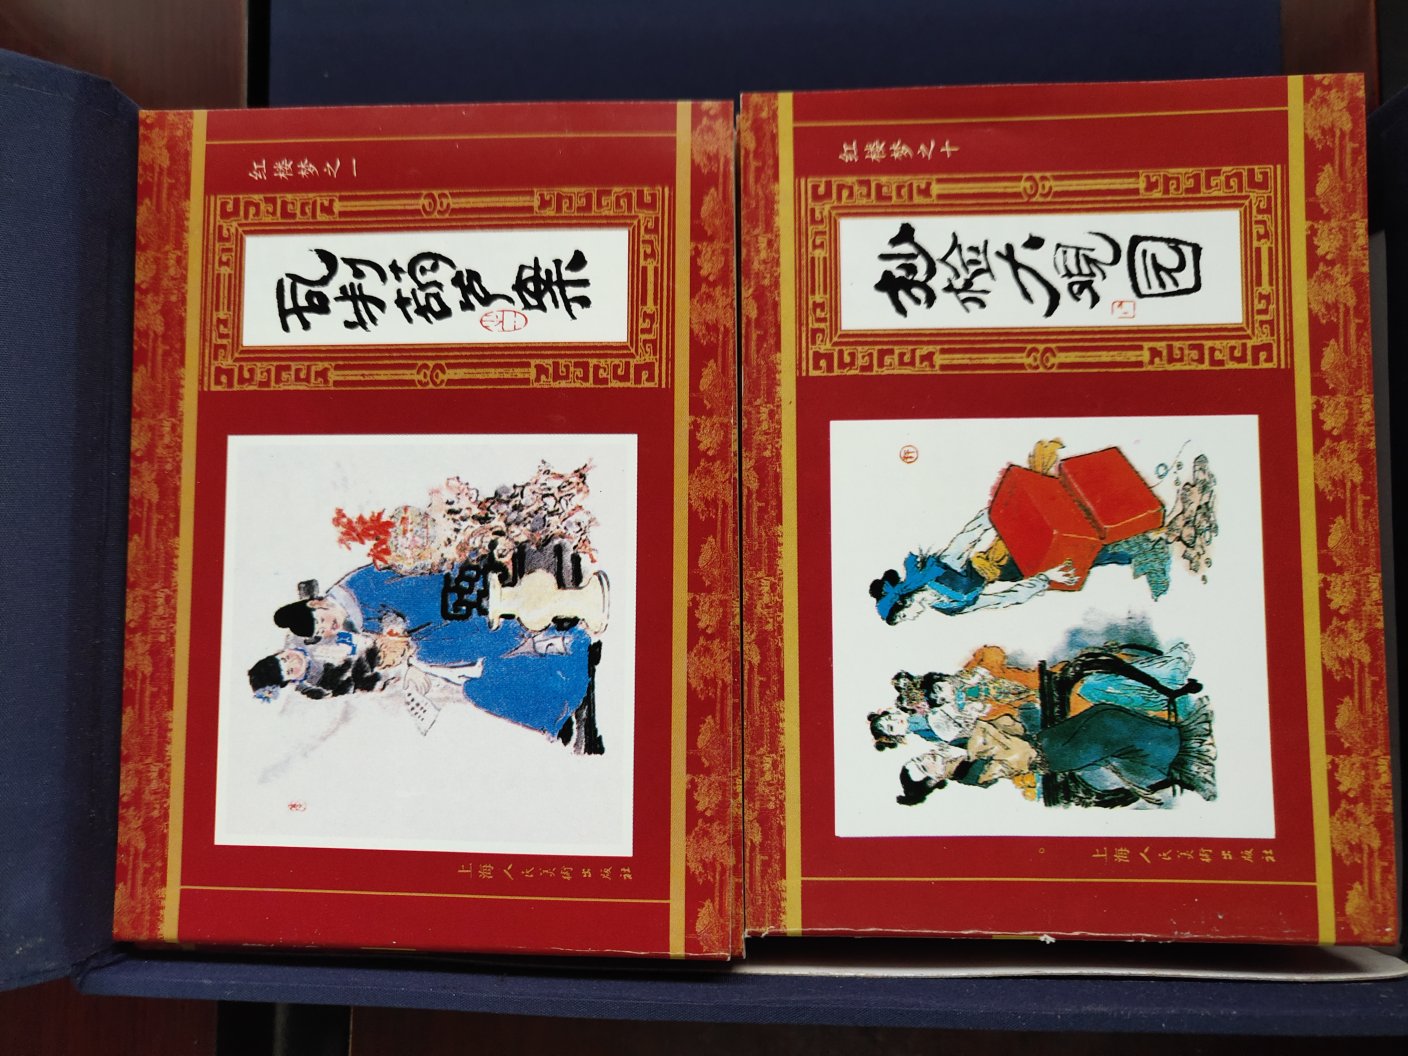 画工很精细，上海人美出版的就是不一样，买来两个作用，给孩子看，另外就是收藏了，虽然不是初版或者限量版，但主要还是情怀啊。唯一可惜的就是册数少了点，如果是60回就完美了。